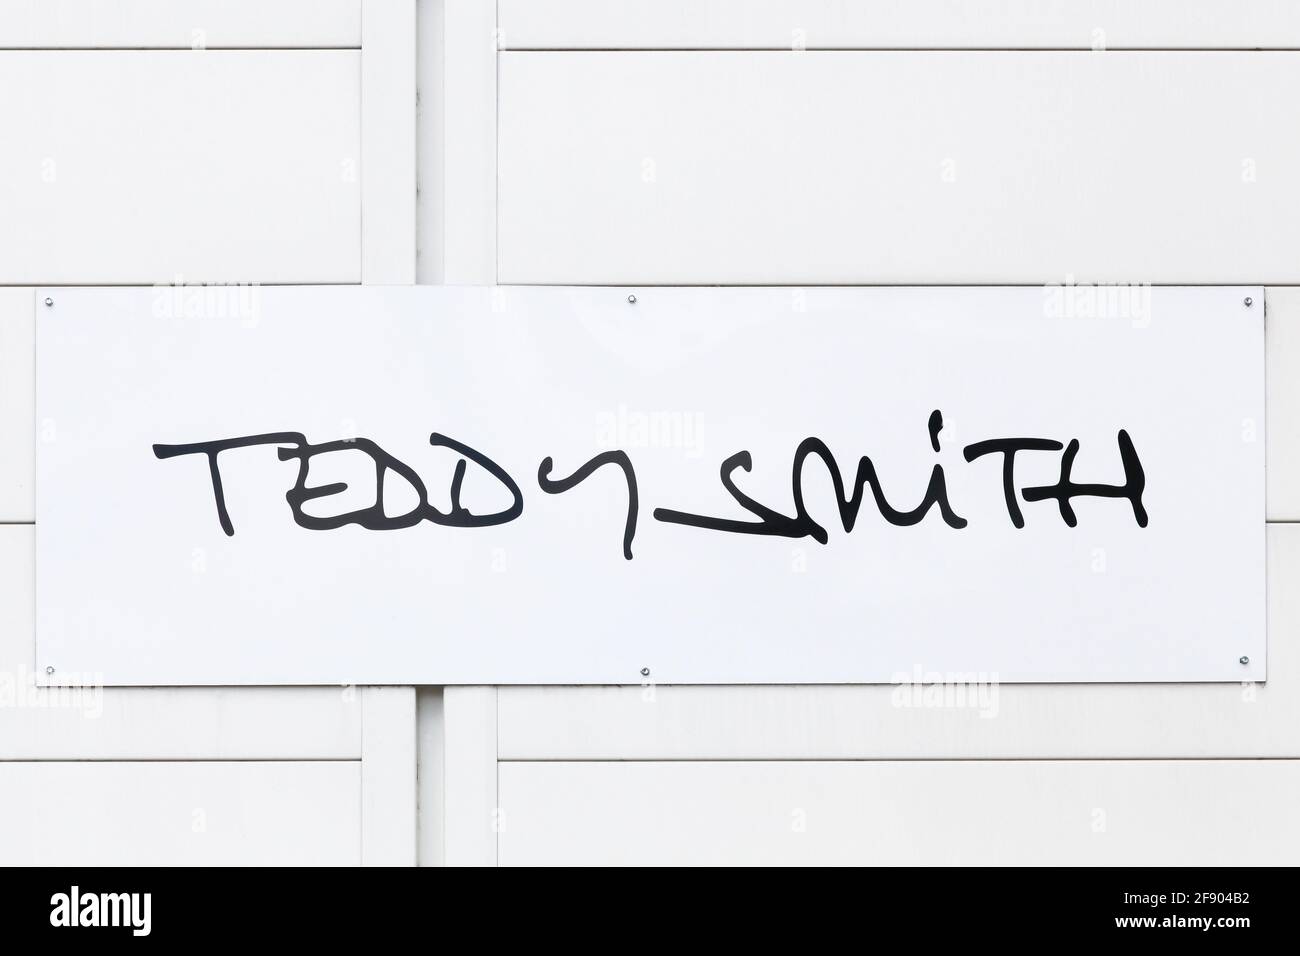 Saint Egreve, Frankreich - 16. Juni 2019: Teddy Smith-Logo an der Wand. Teddy Smith ist eine französische Marke, die sich auf Jeans, Kleidung und Accessoires spezialisiert hat Stockfoto